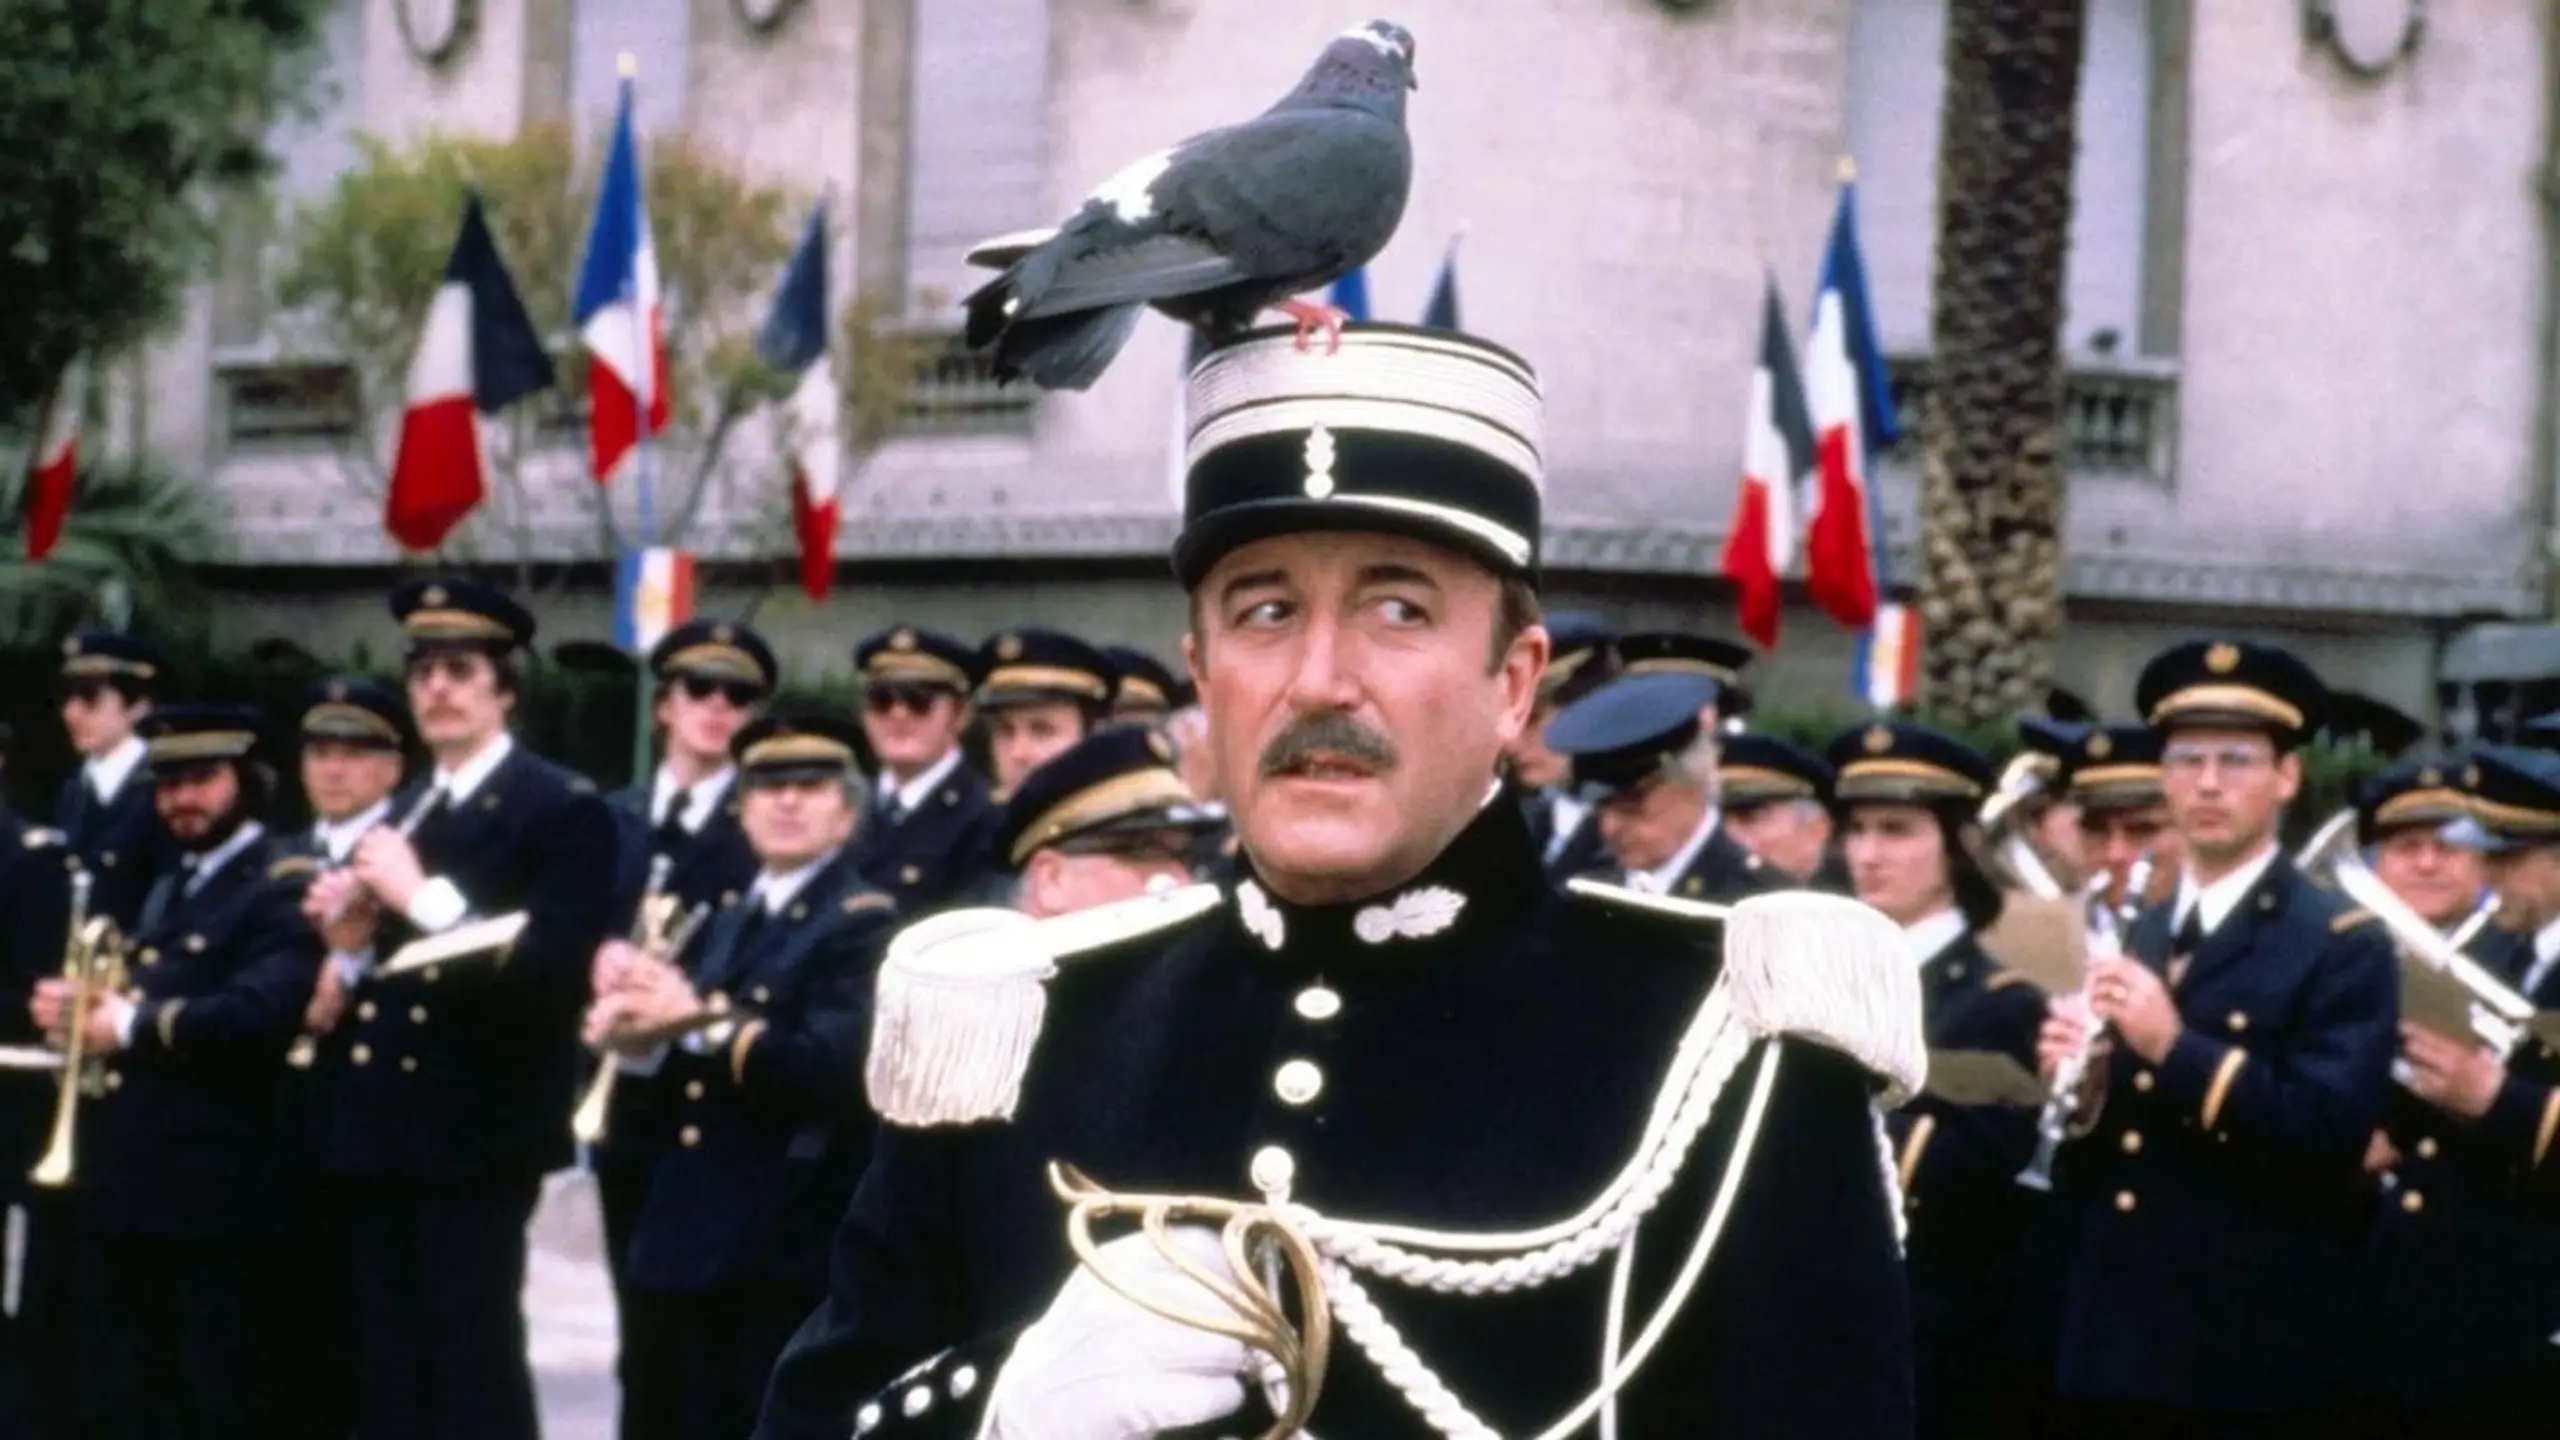 Inspektor Clouseau - Der irre Flic mit dem heißen Blick